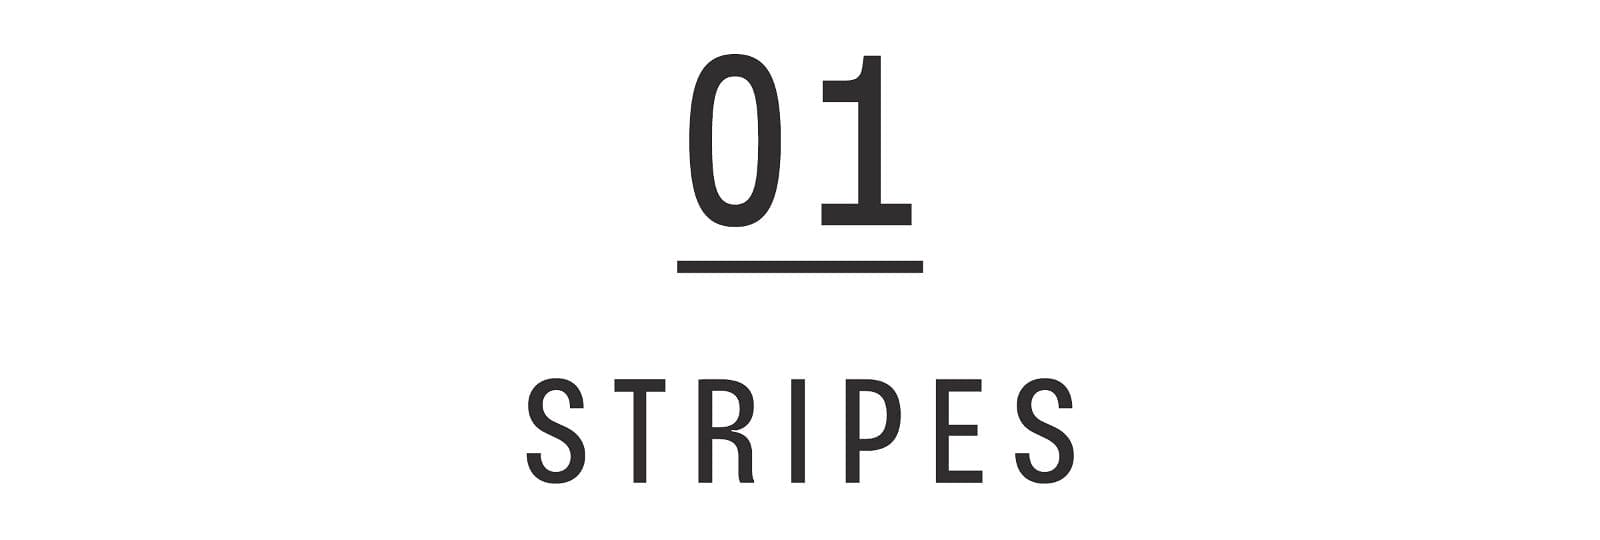 01 STRIPES